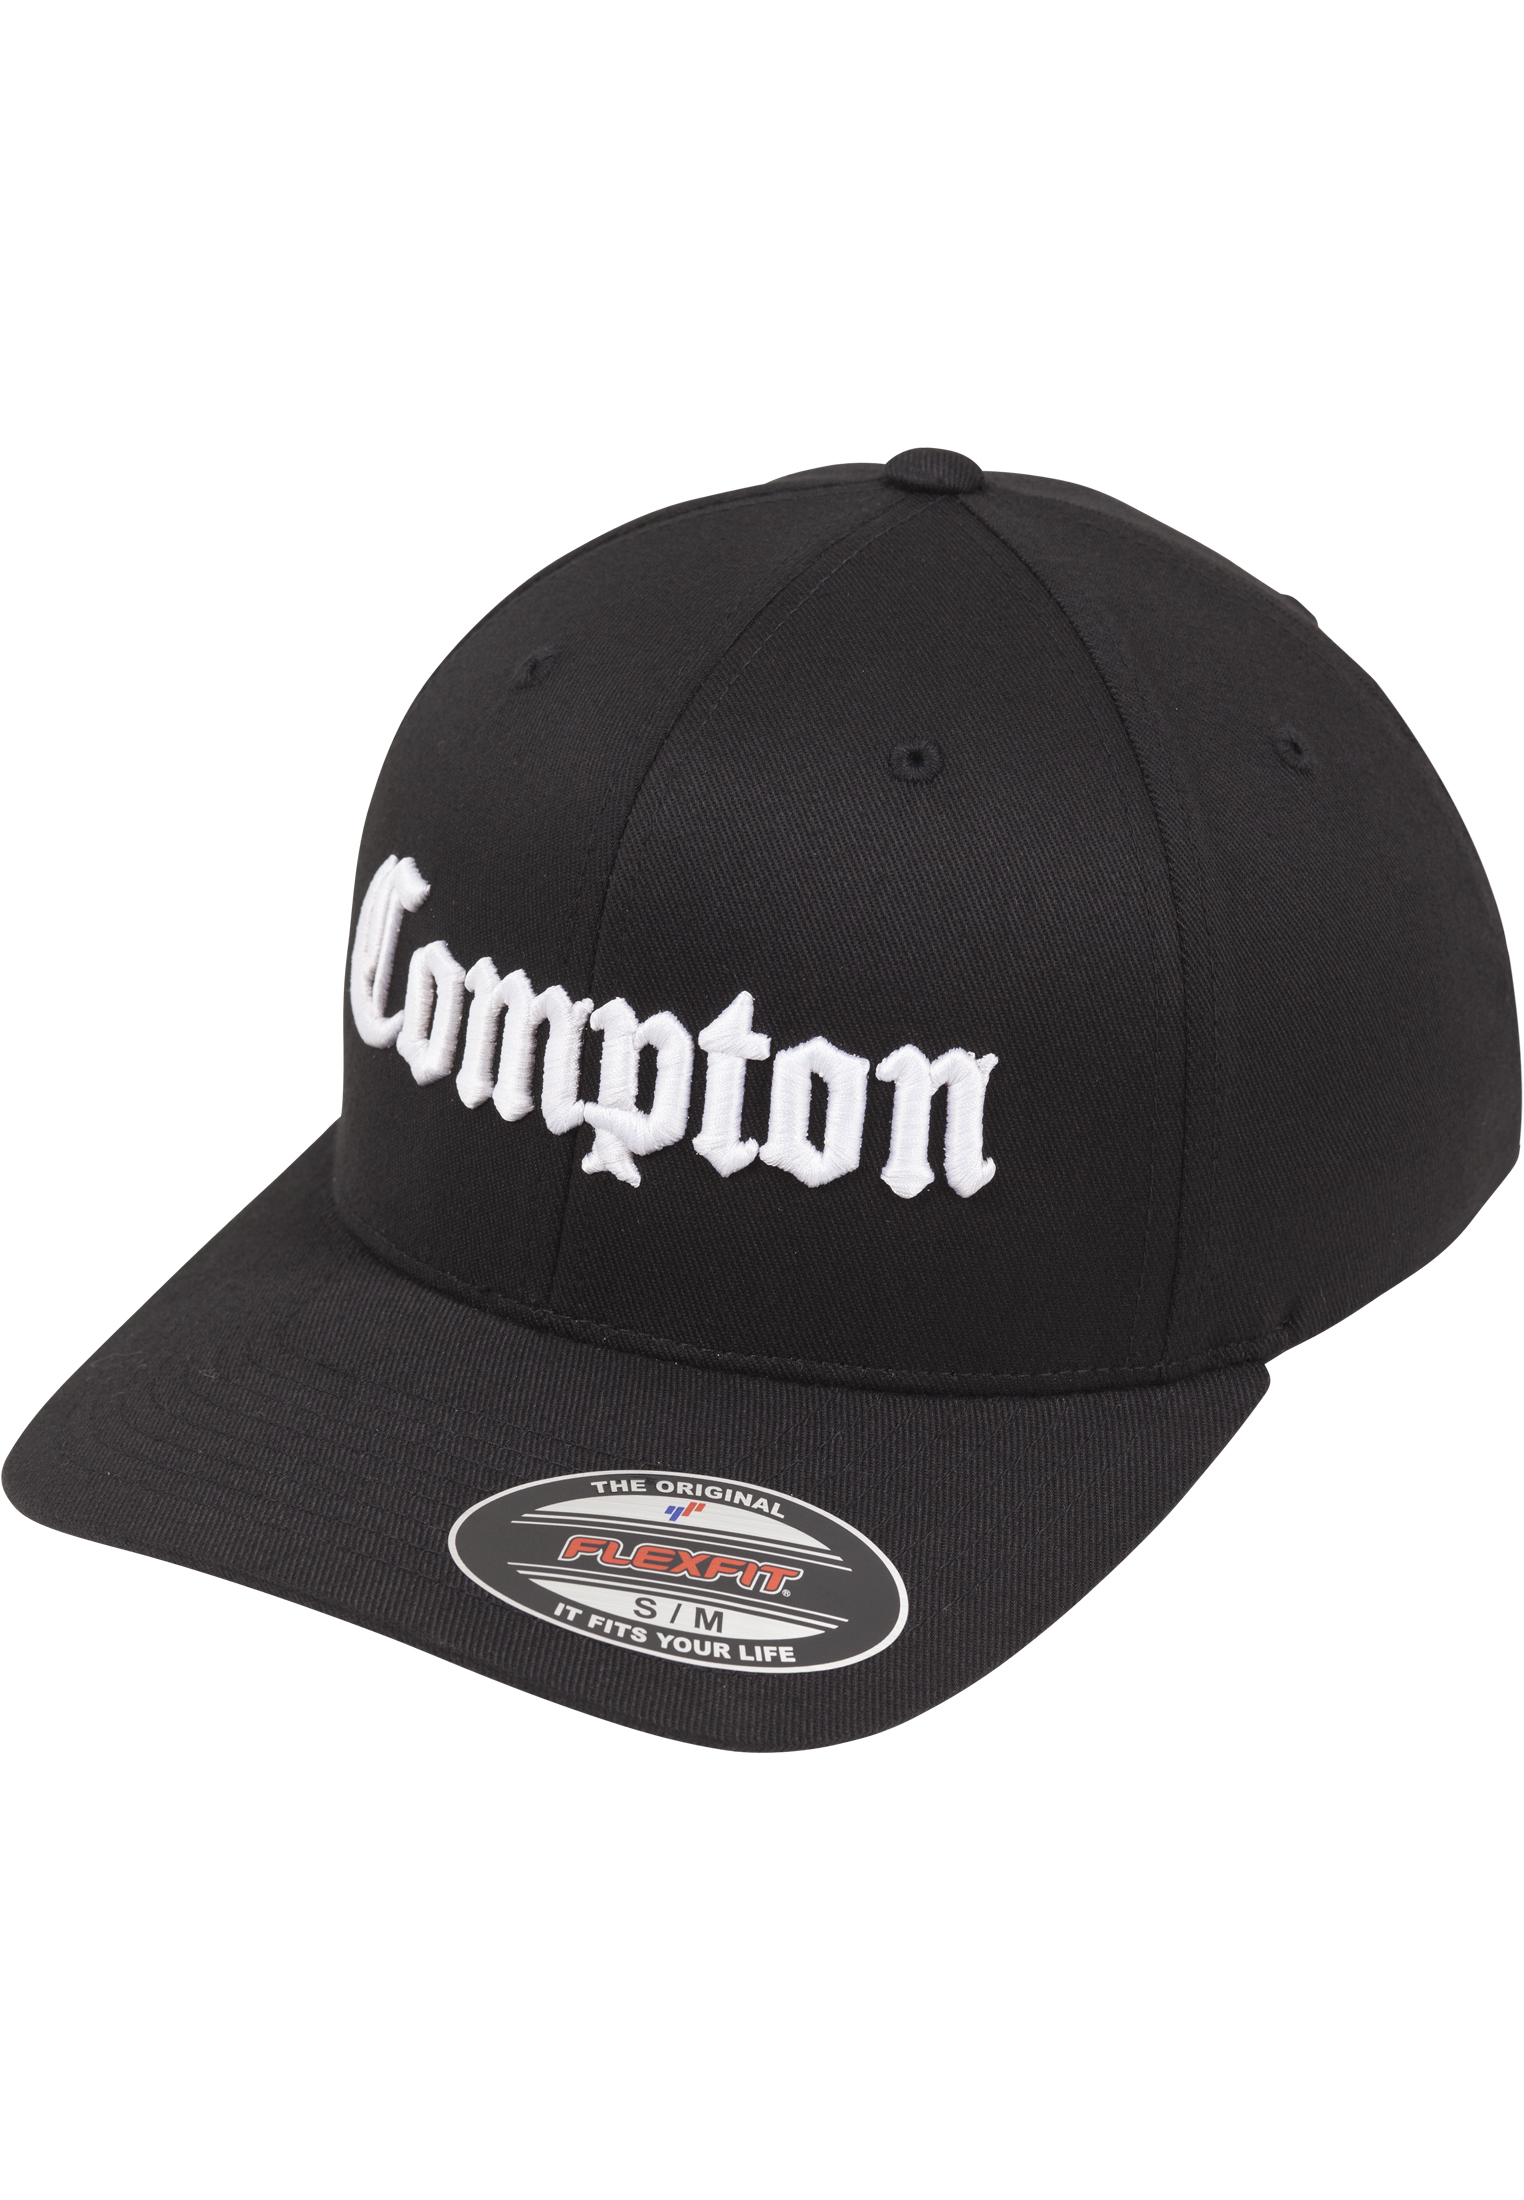 Compton Flexfit Cap-MT296